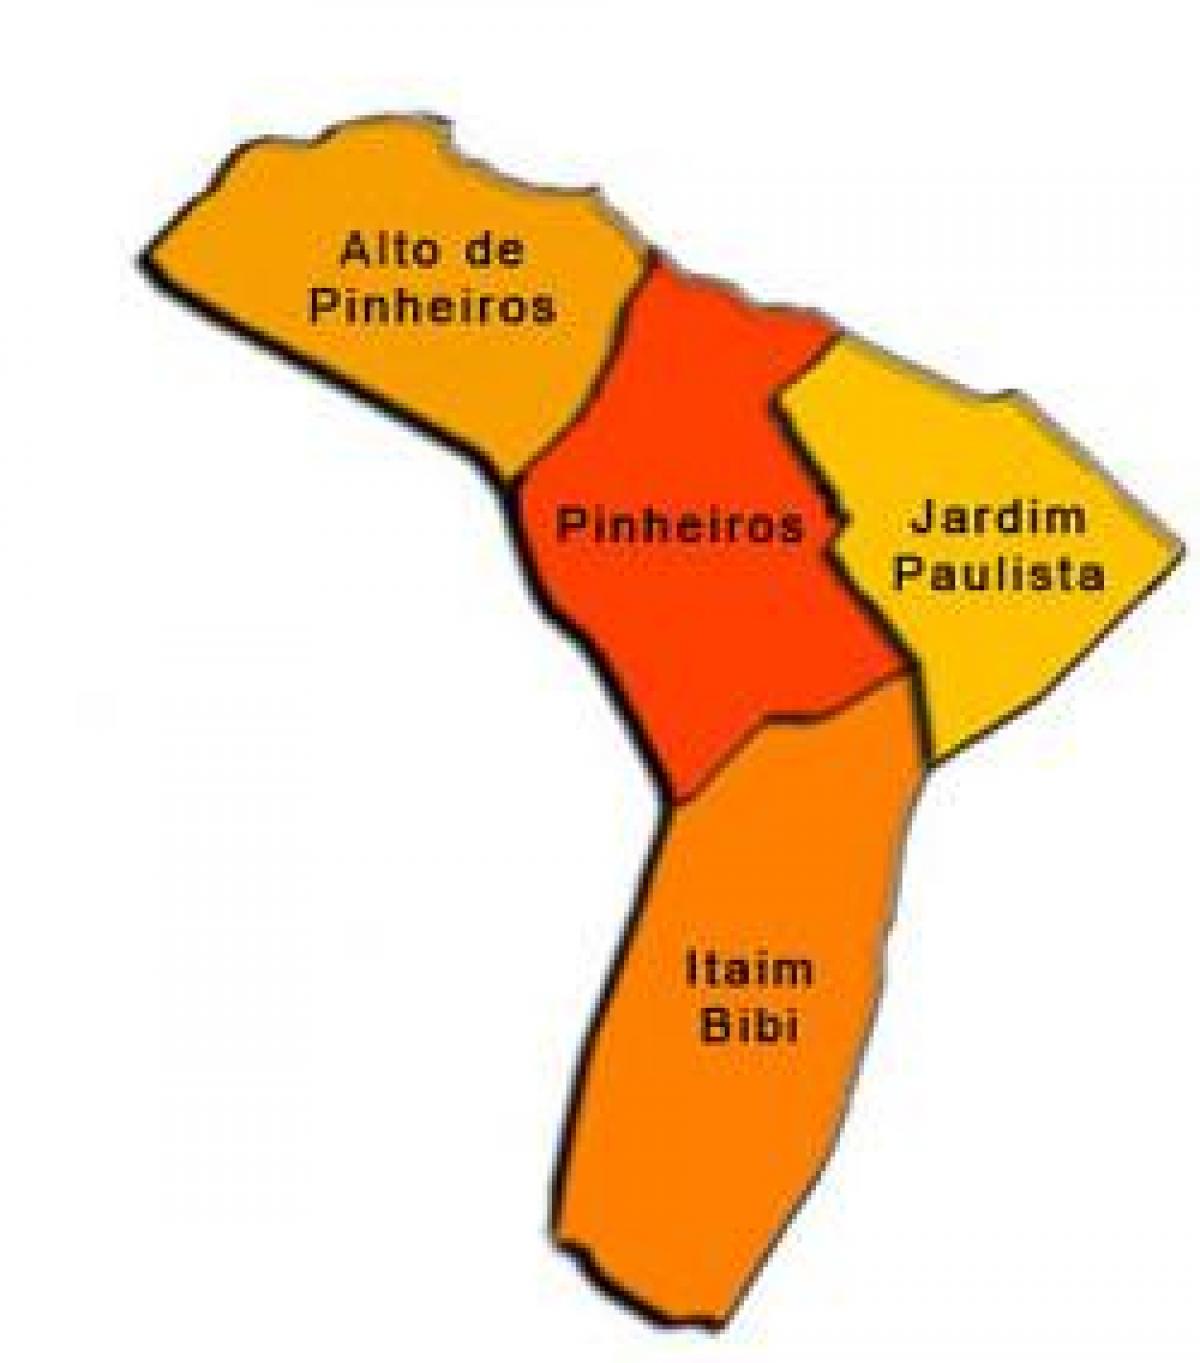 નકશો Pinheiros પેટા-પ્રીફેકચર